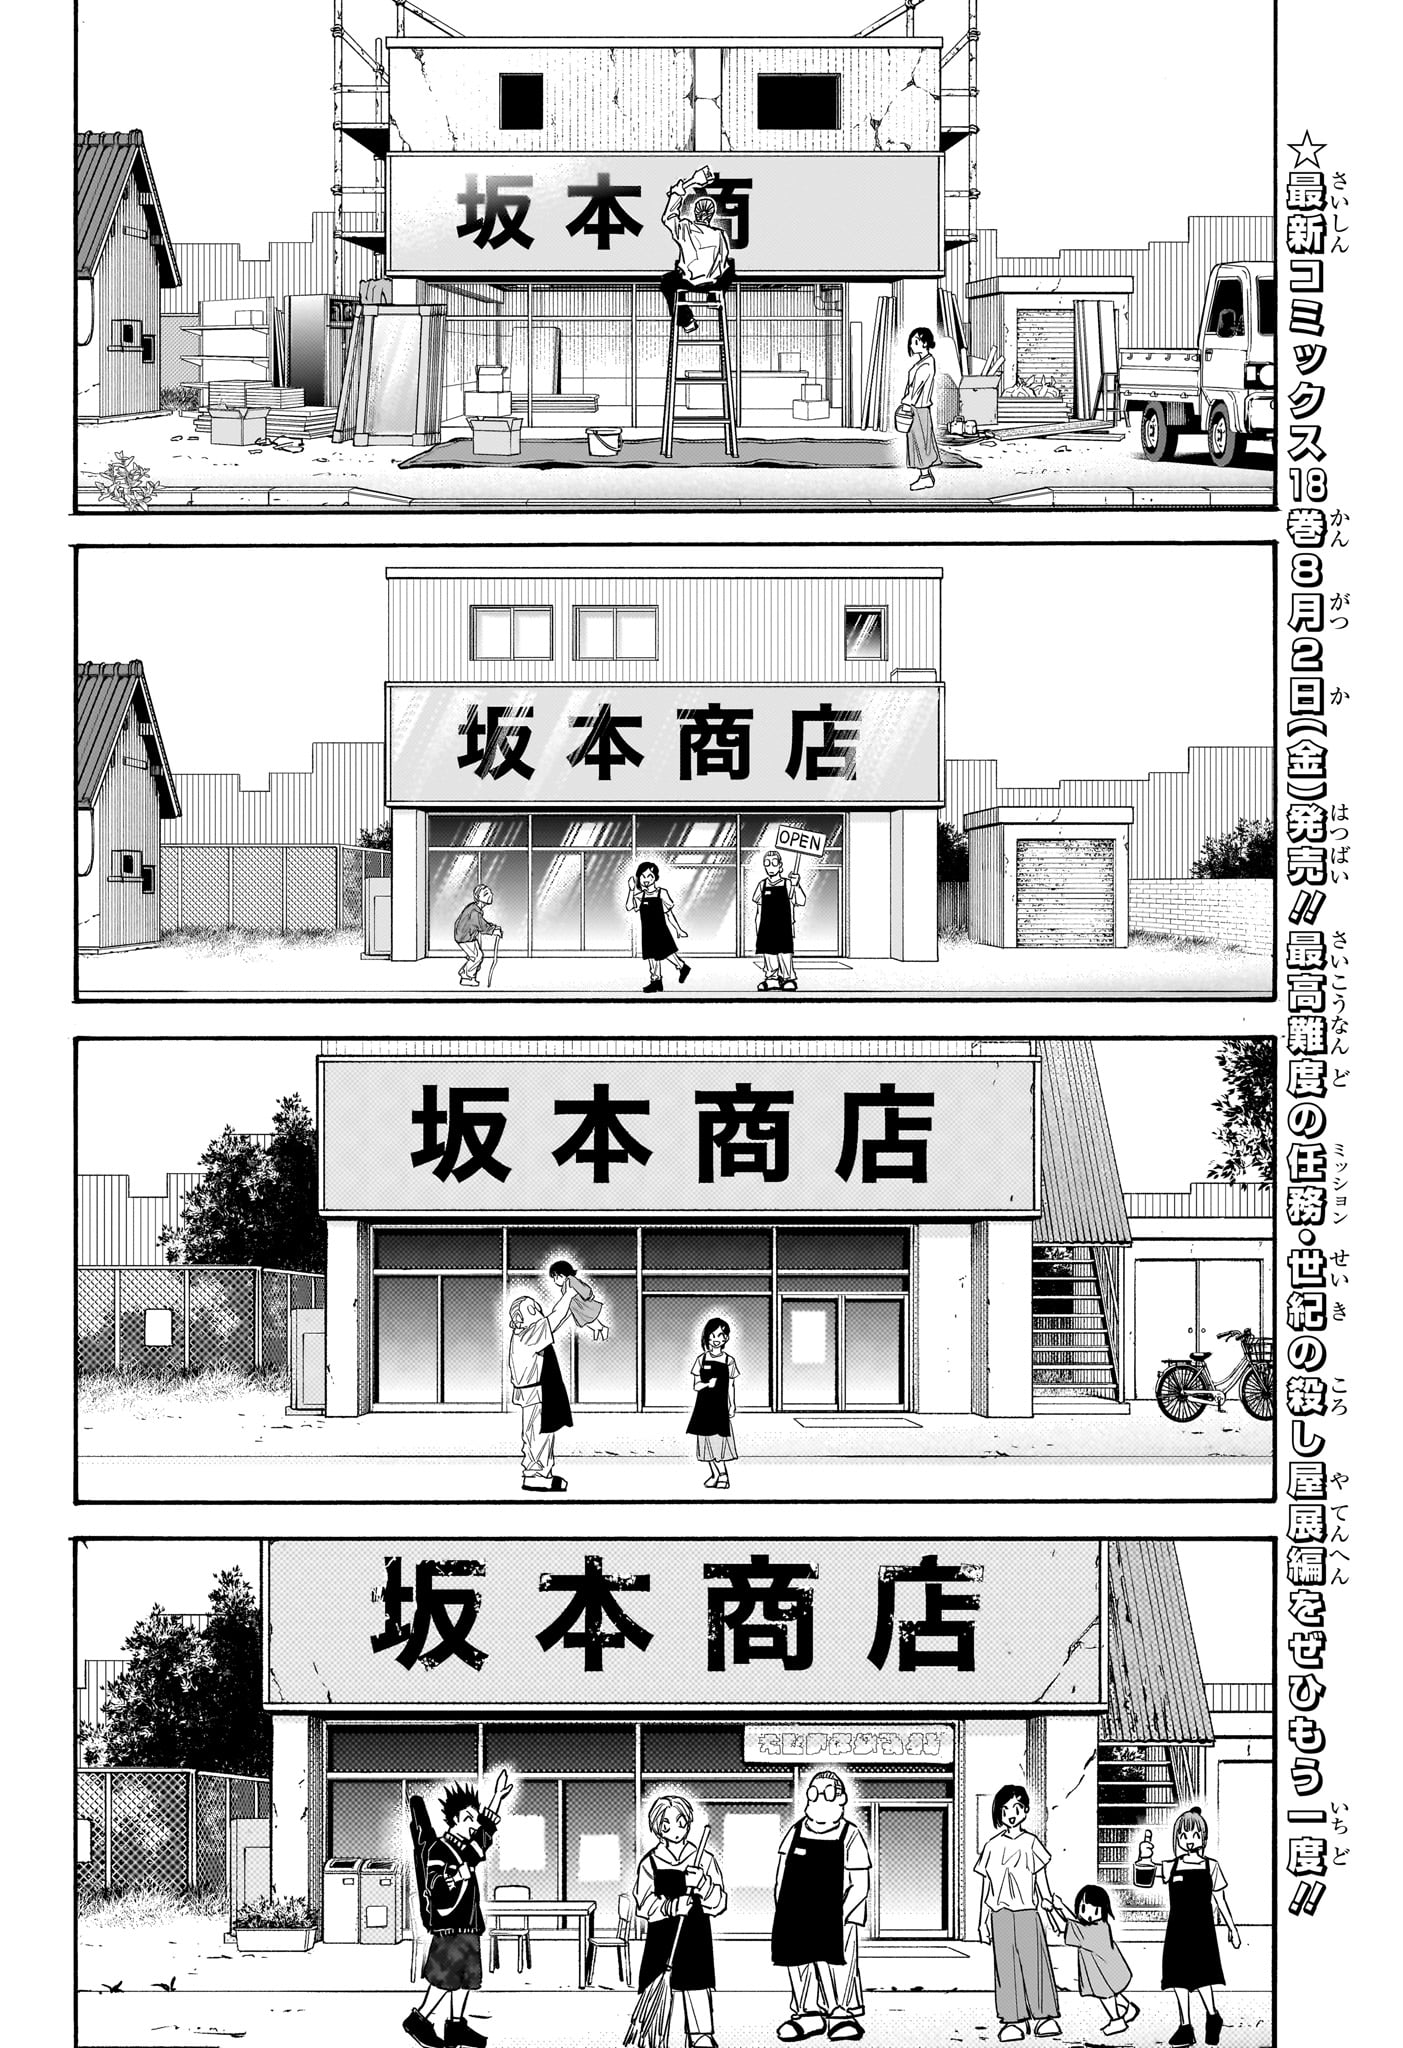 Sakamoto Days - Chapter 171 - Page 12